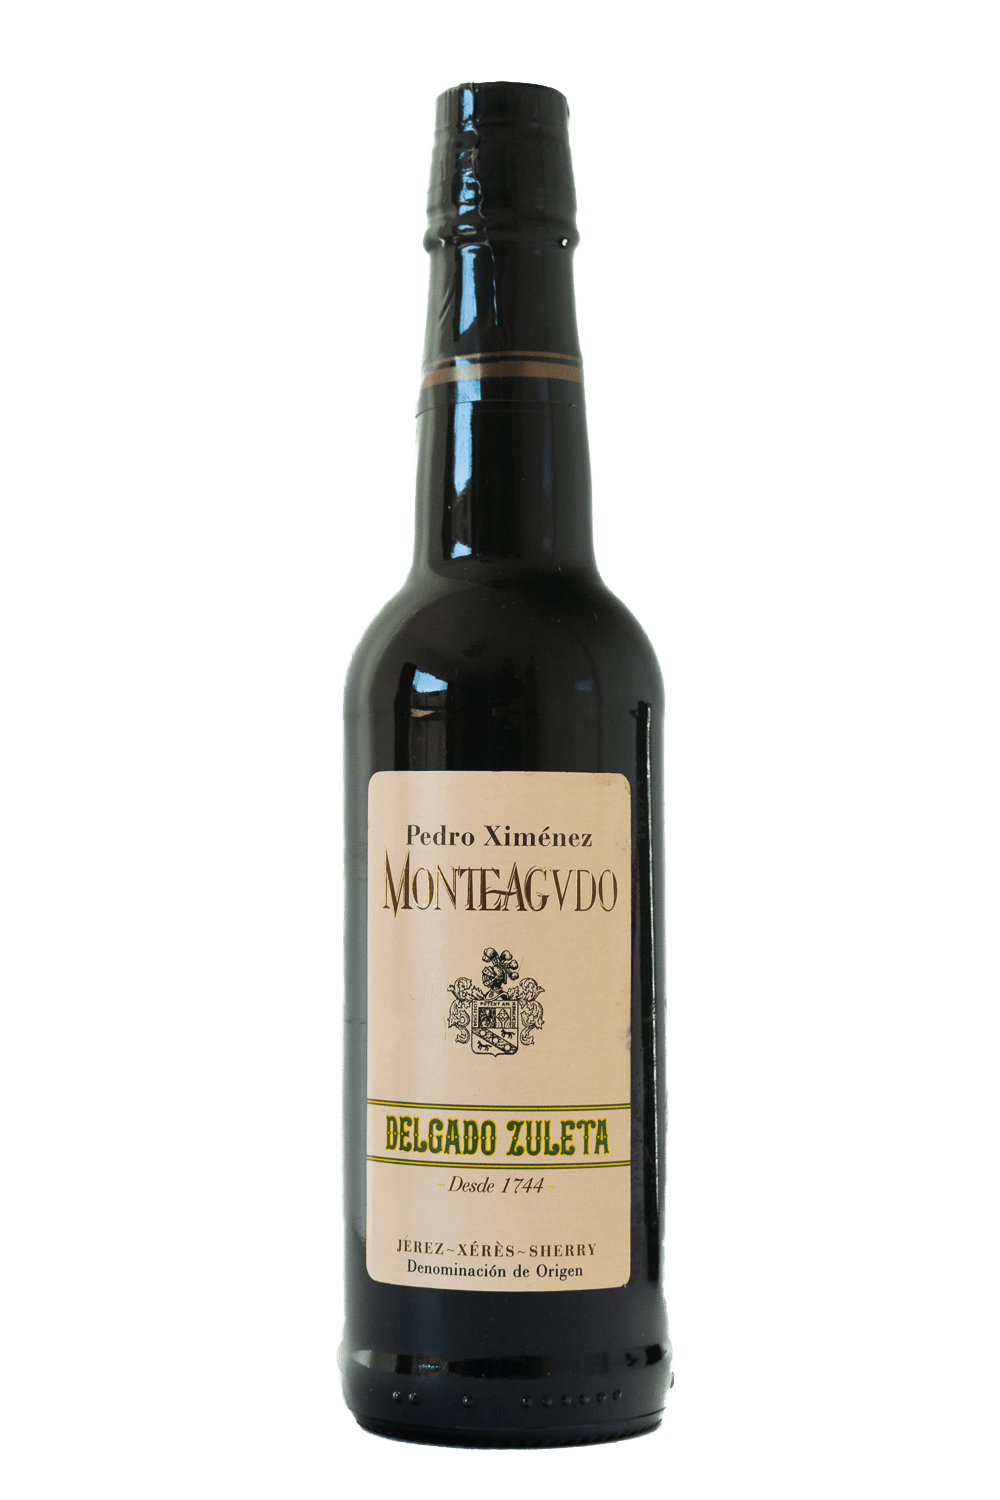 Delgado Zuleta - Pedro Ximénez Monteagudo - Jerez (375ml) - The Blend Wines